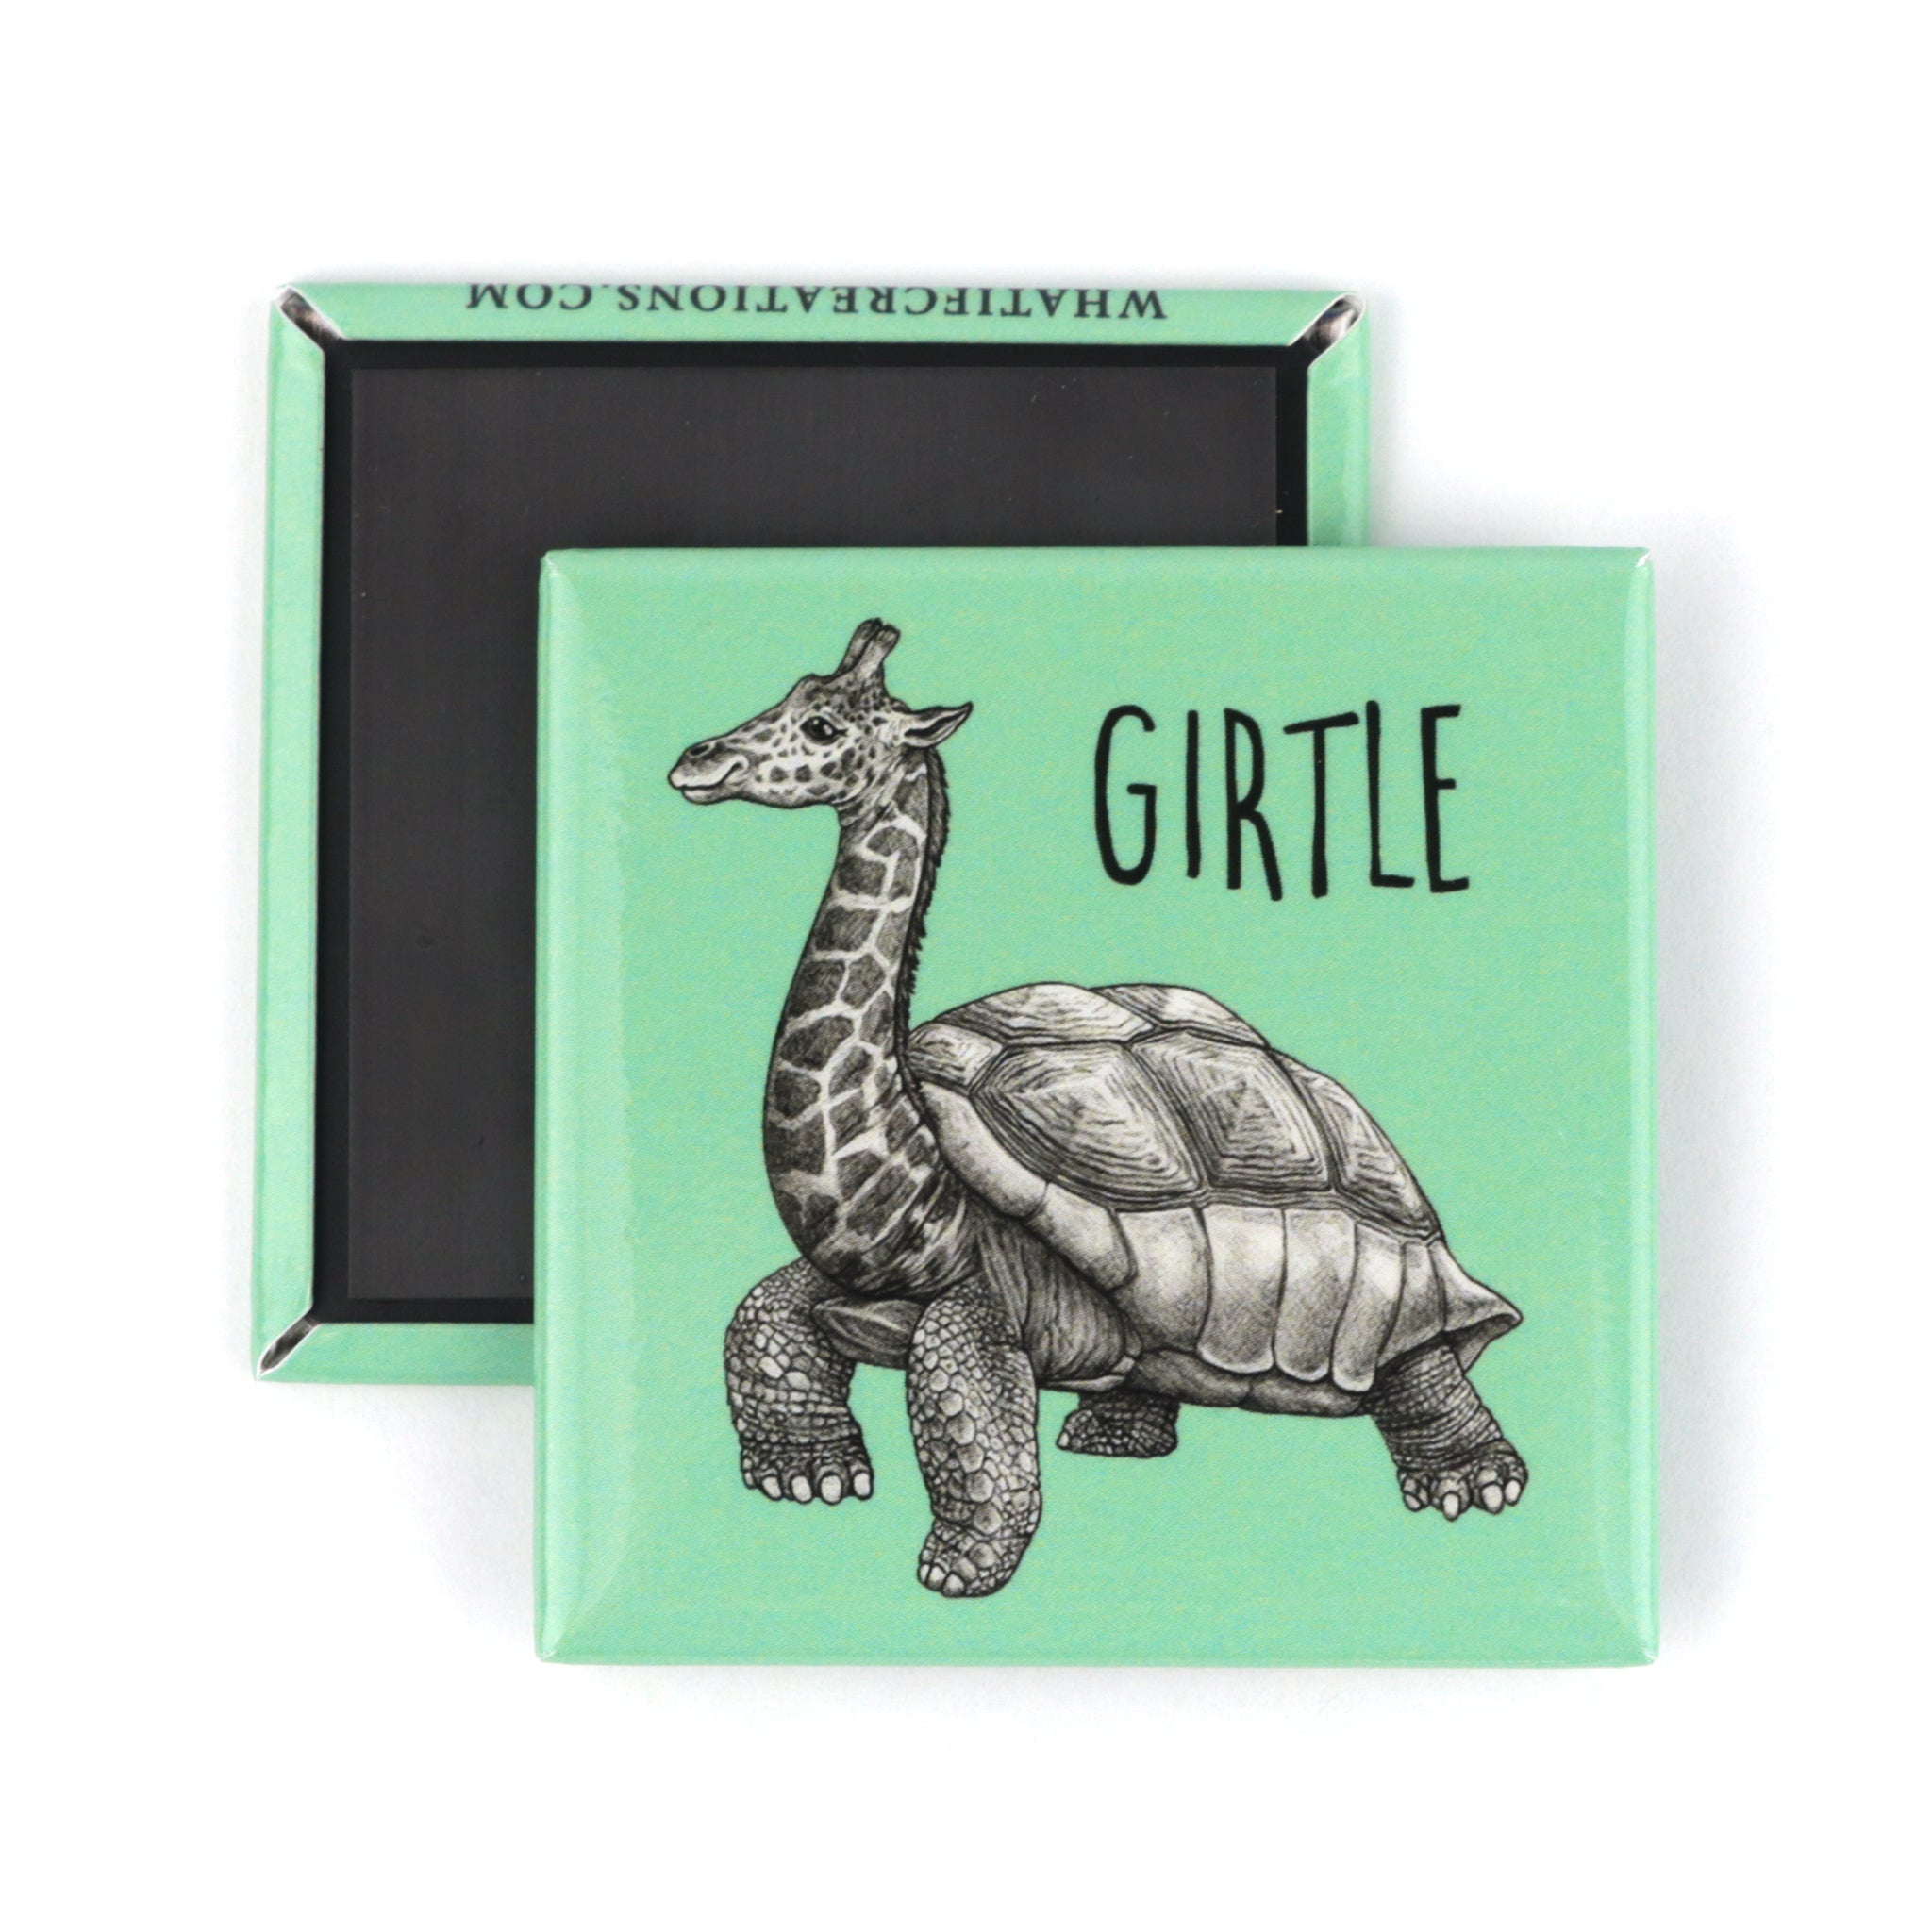 Girtle | Giraffe + Turtle Hybrid Animal | 2" Fridge Magnet